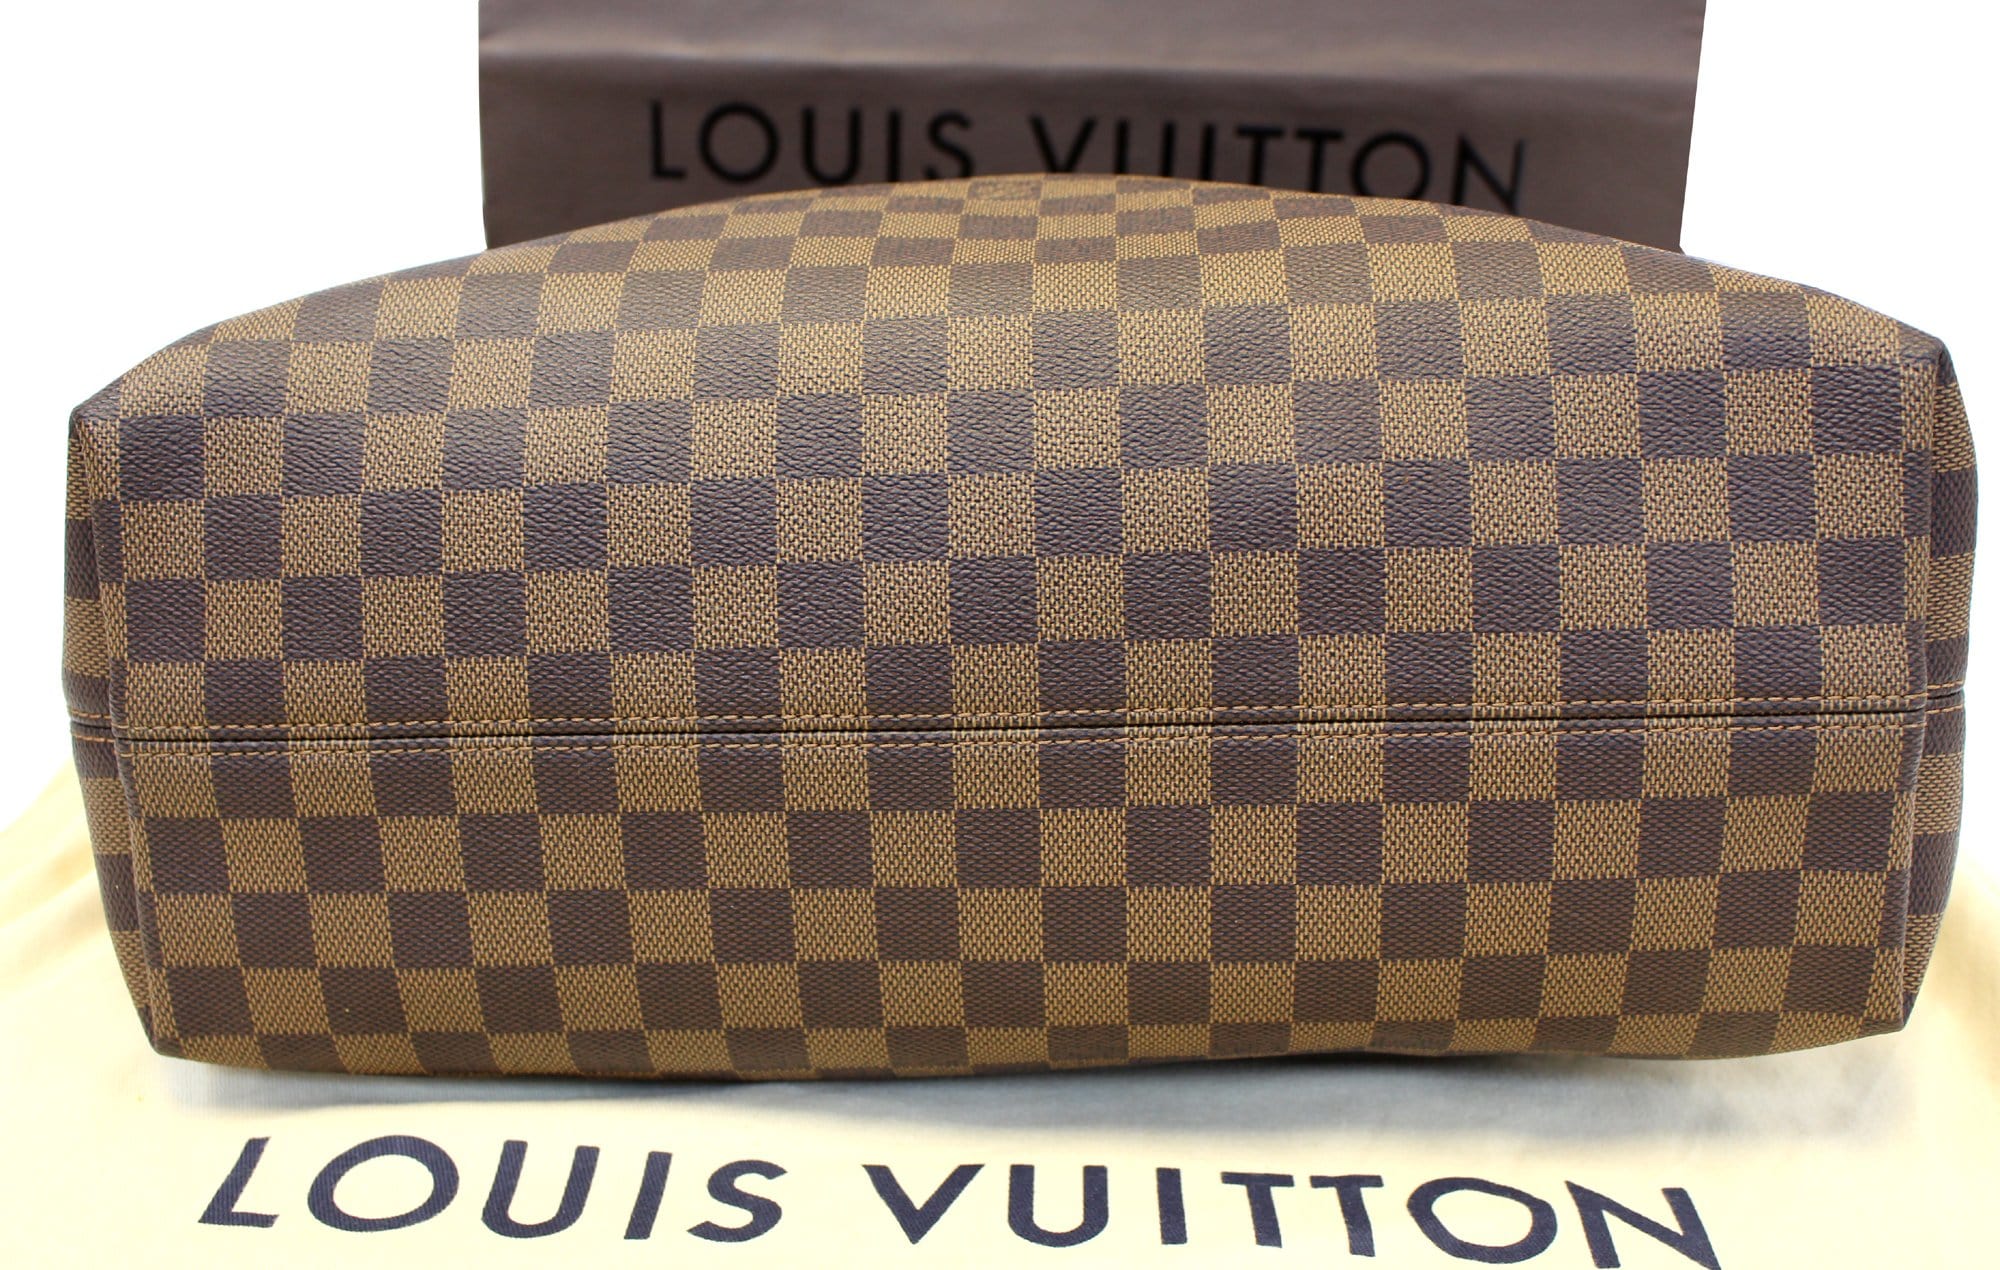 AUTHENTIC Louis Vuitton Graceful MM Damier Ebene PREOWNED (WBA805